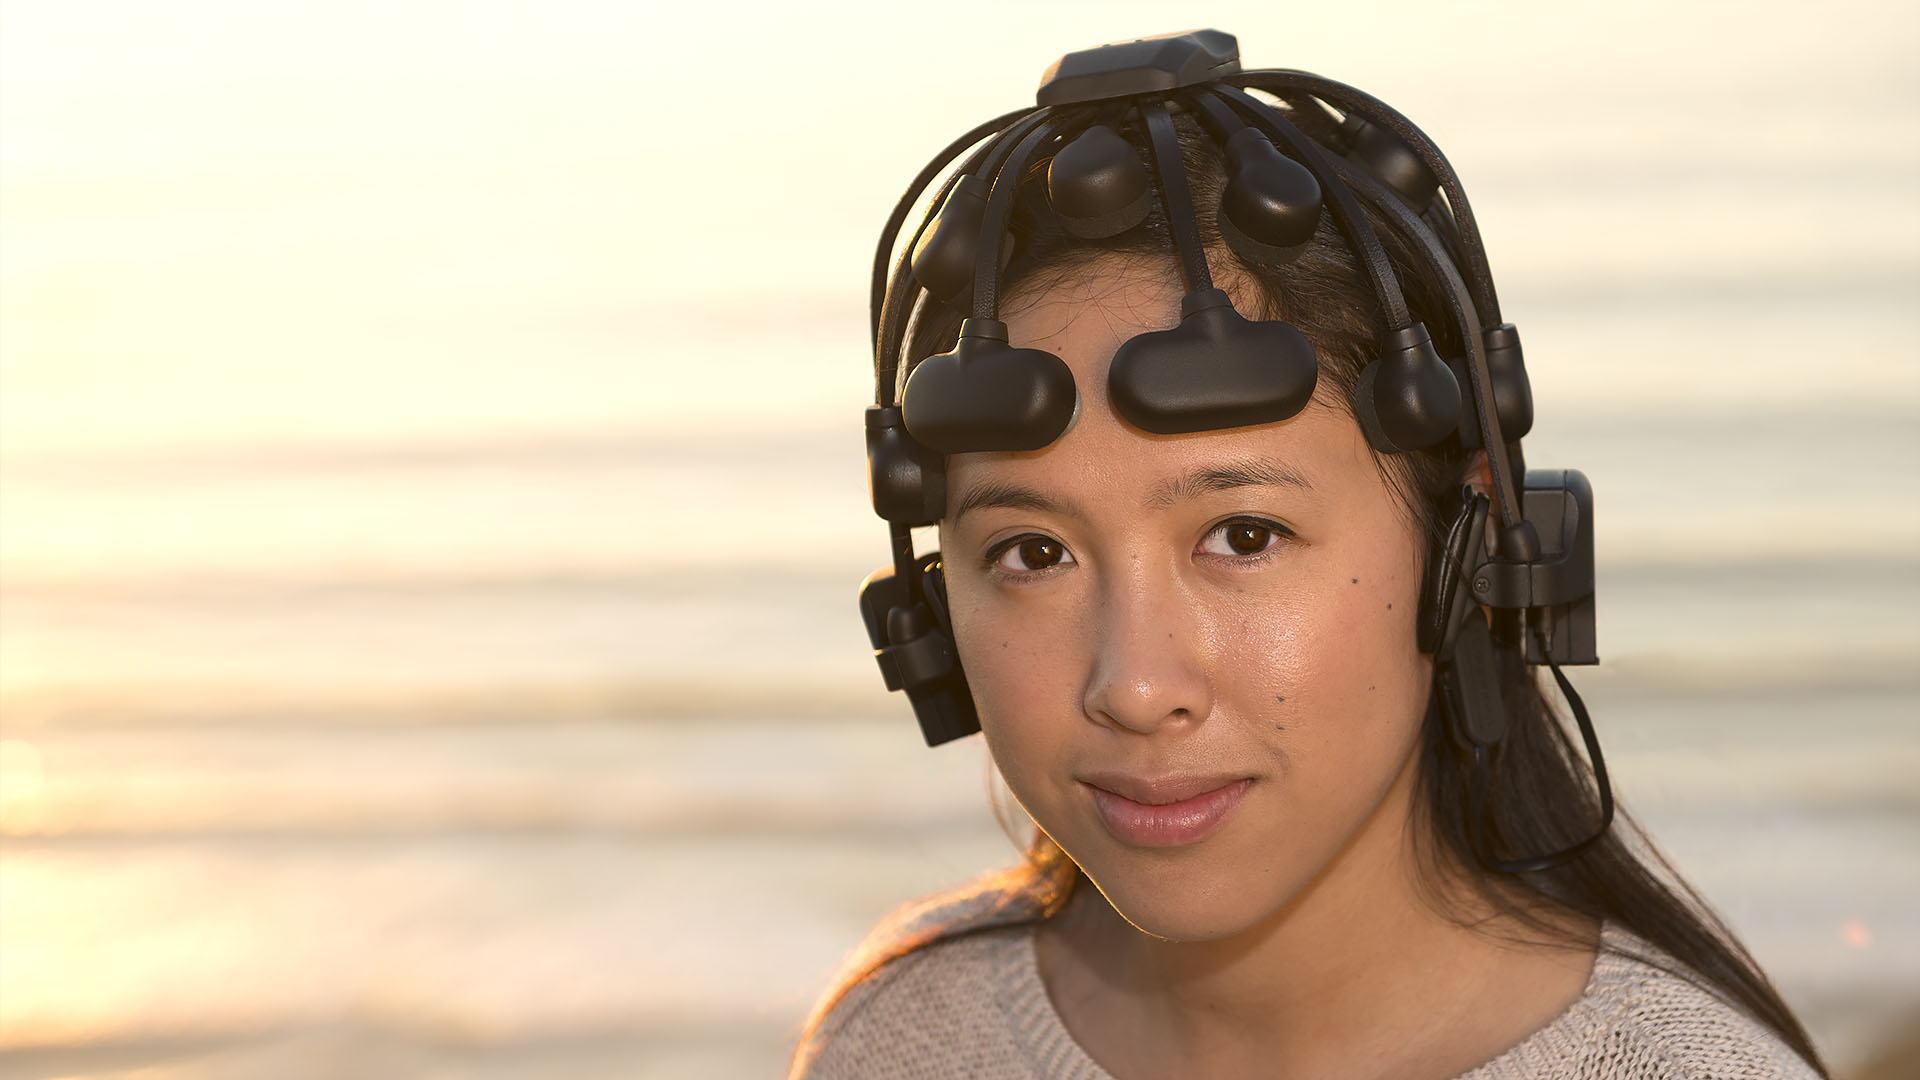 Cognionics Quick-20 Dry EEG Headset